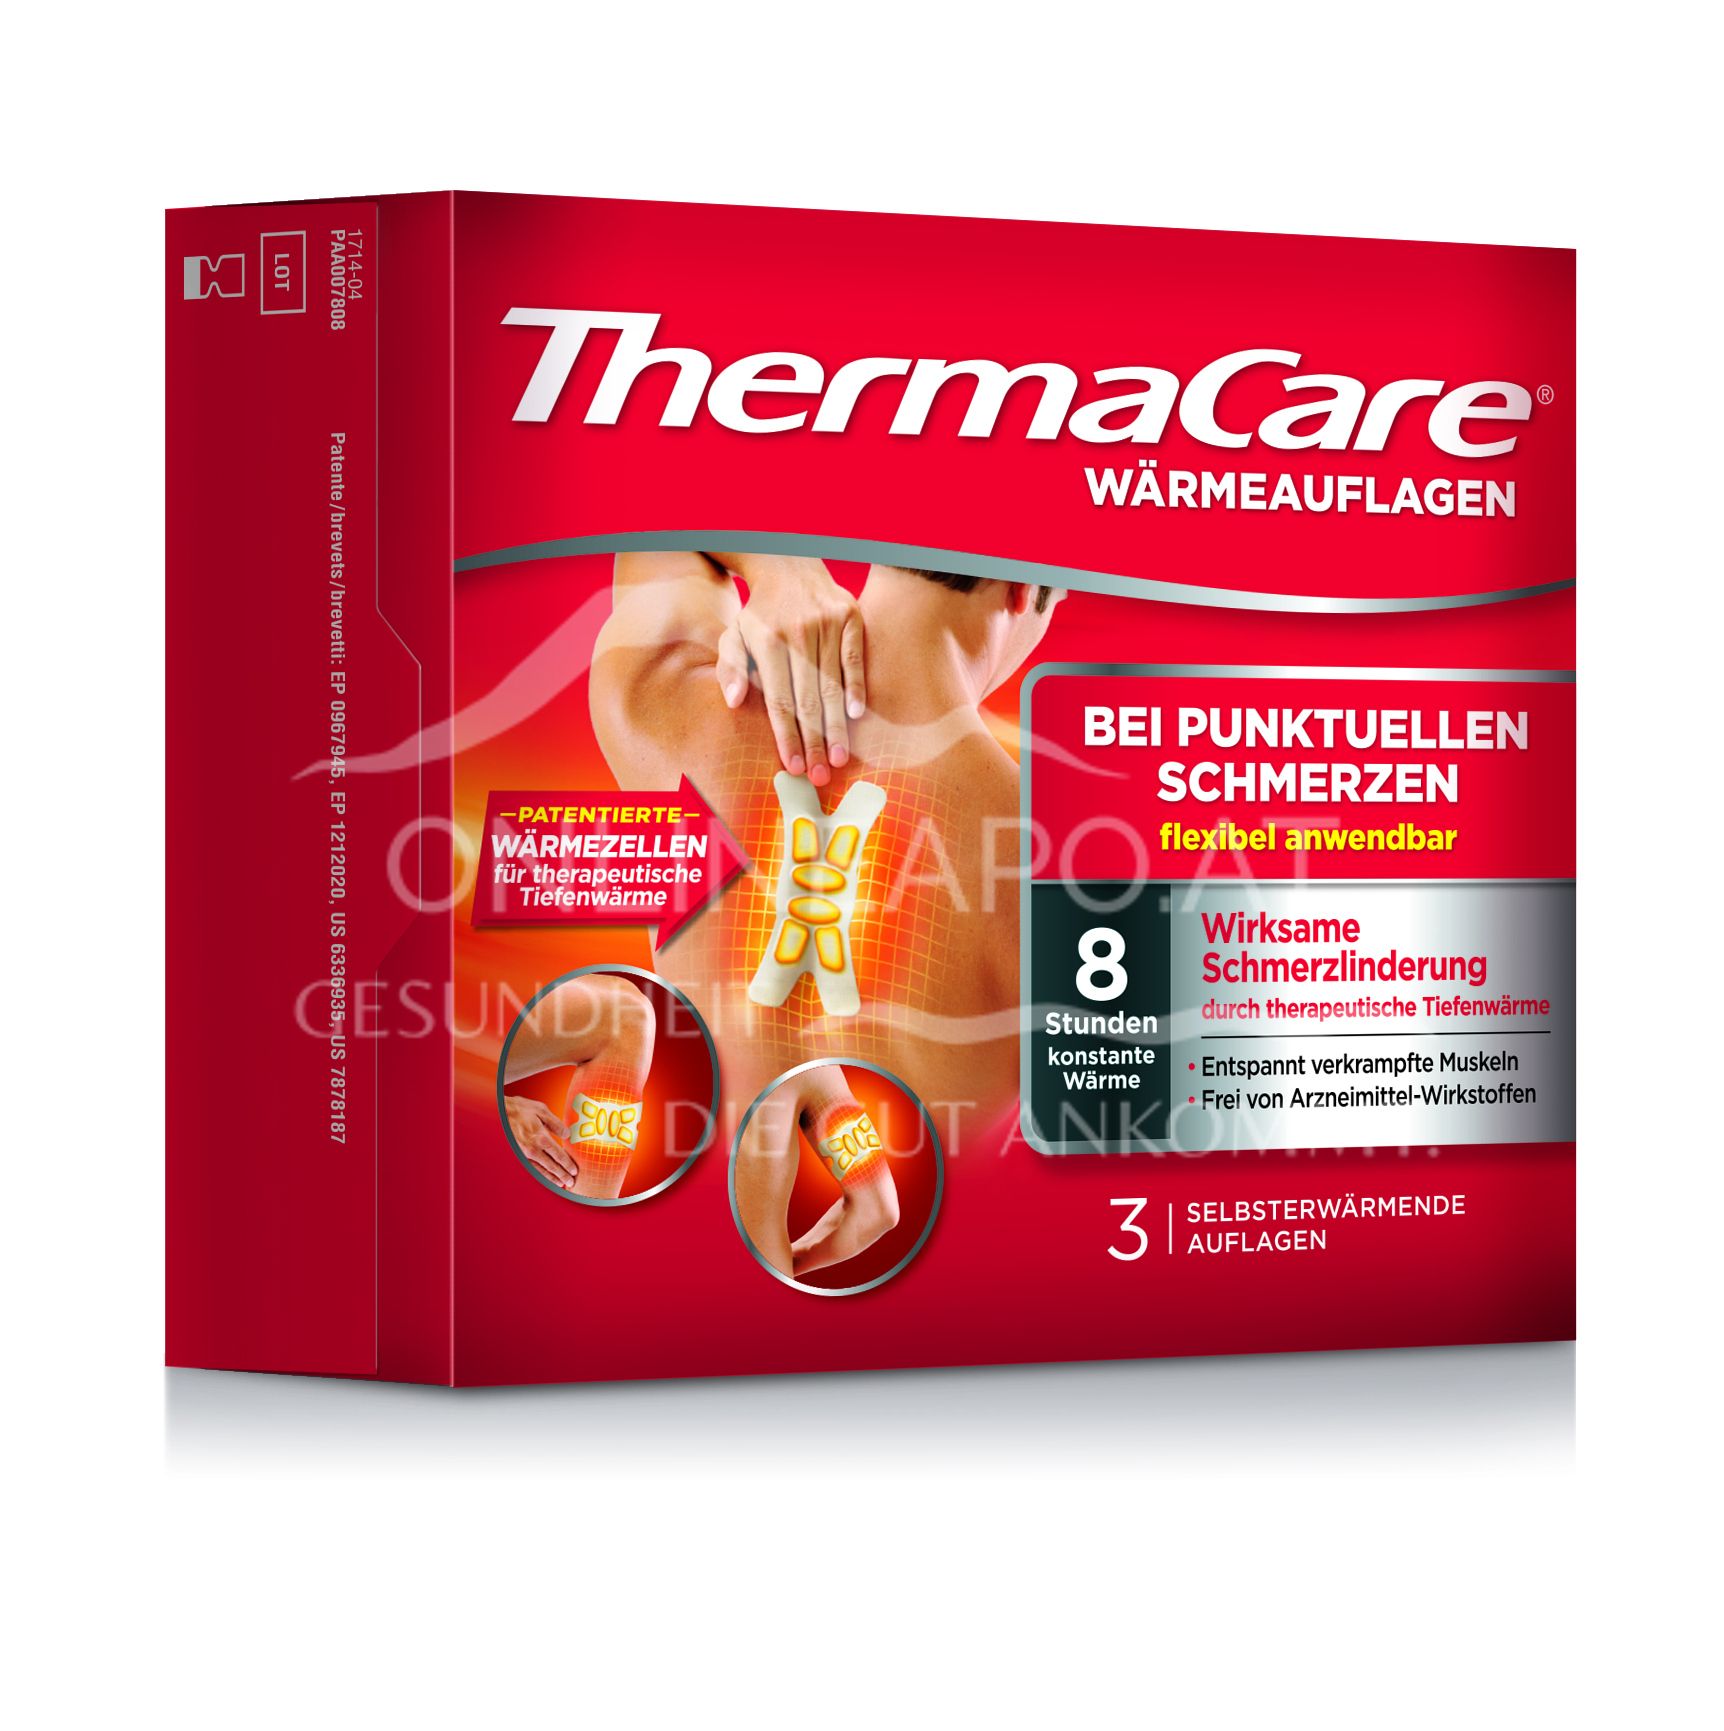 ThermaCare® Wärmeauflagen für flexible Anwendung